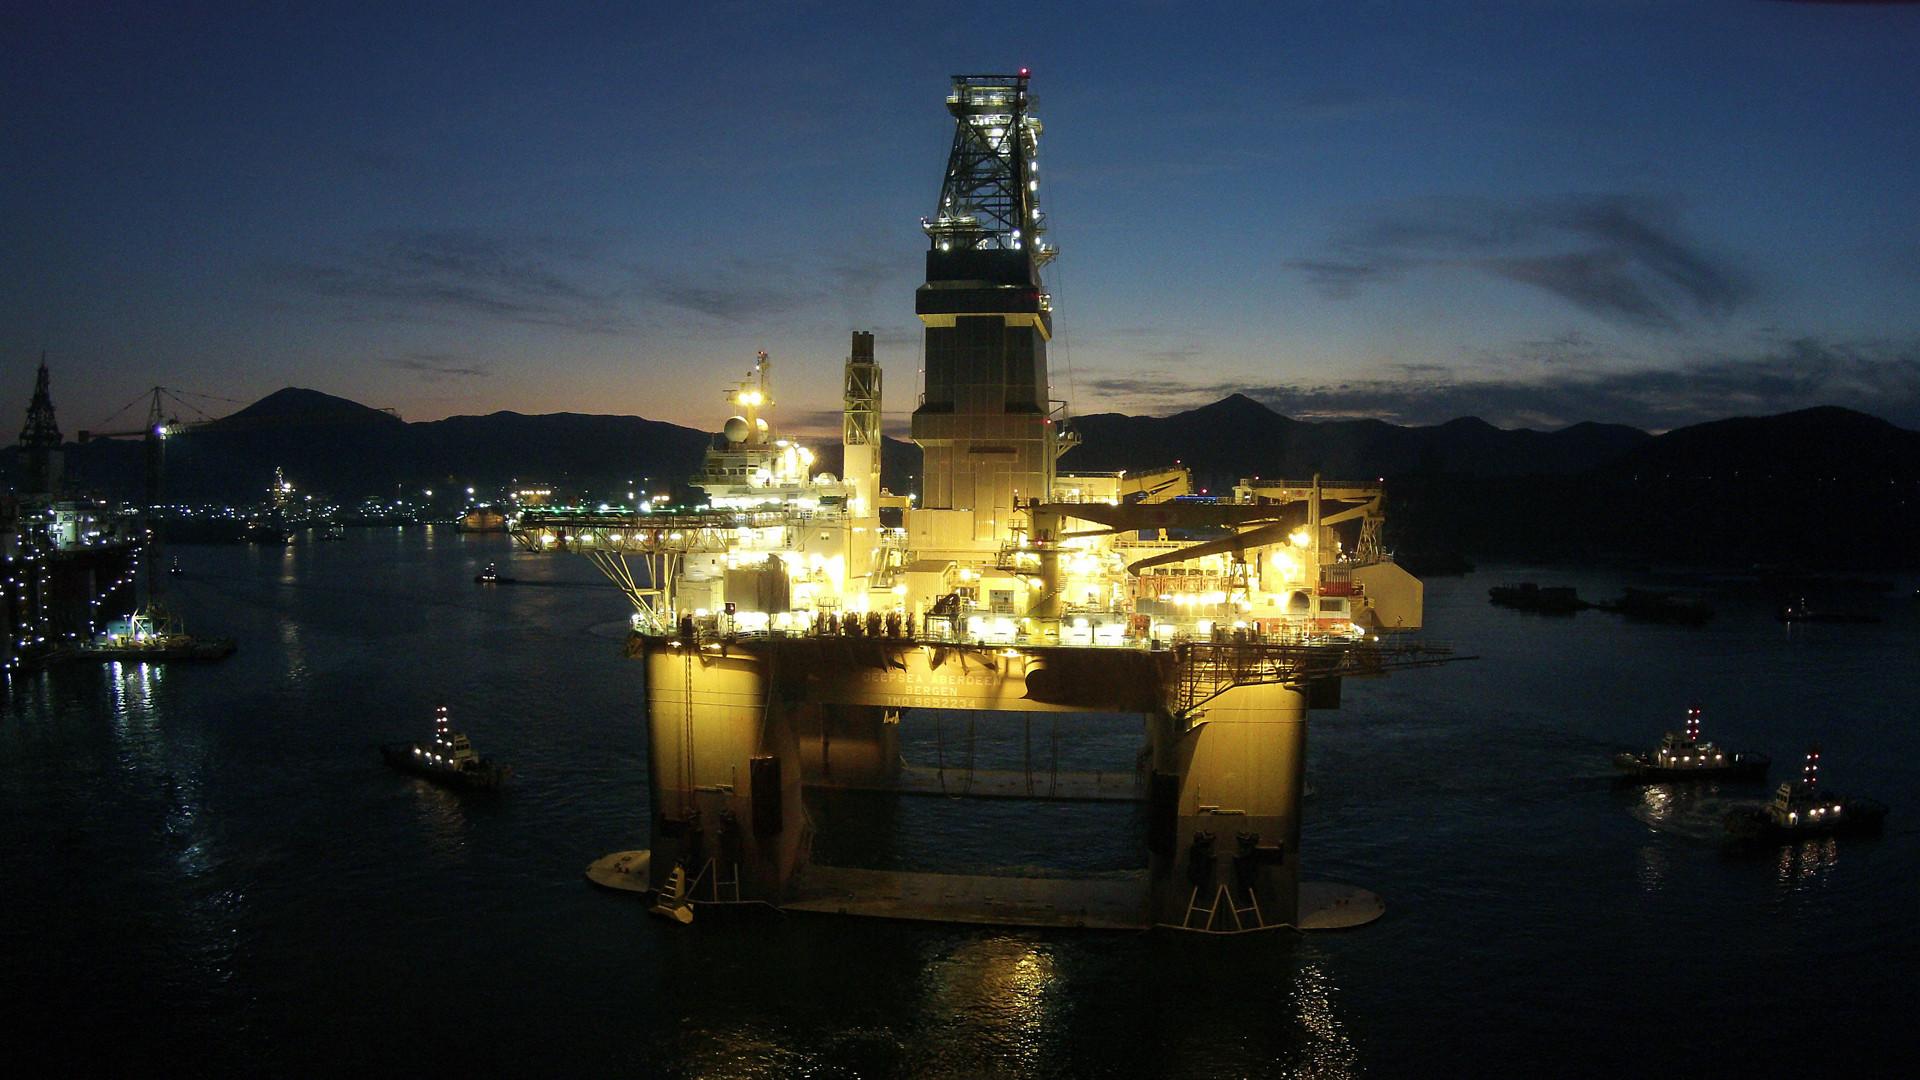 Deepsea Aberdeen rig will drill an appraisal well for WIntershall Dea